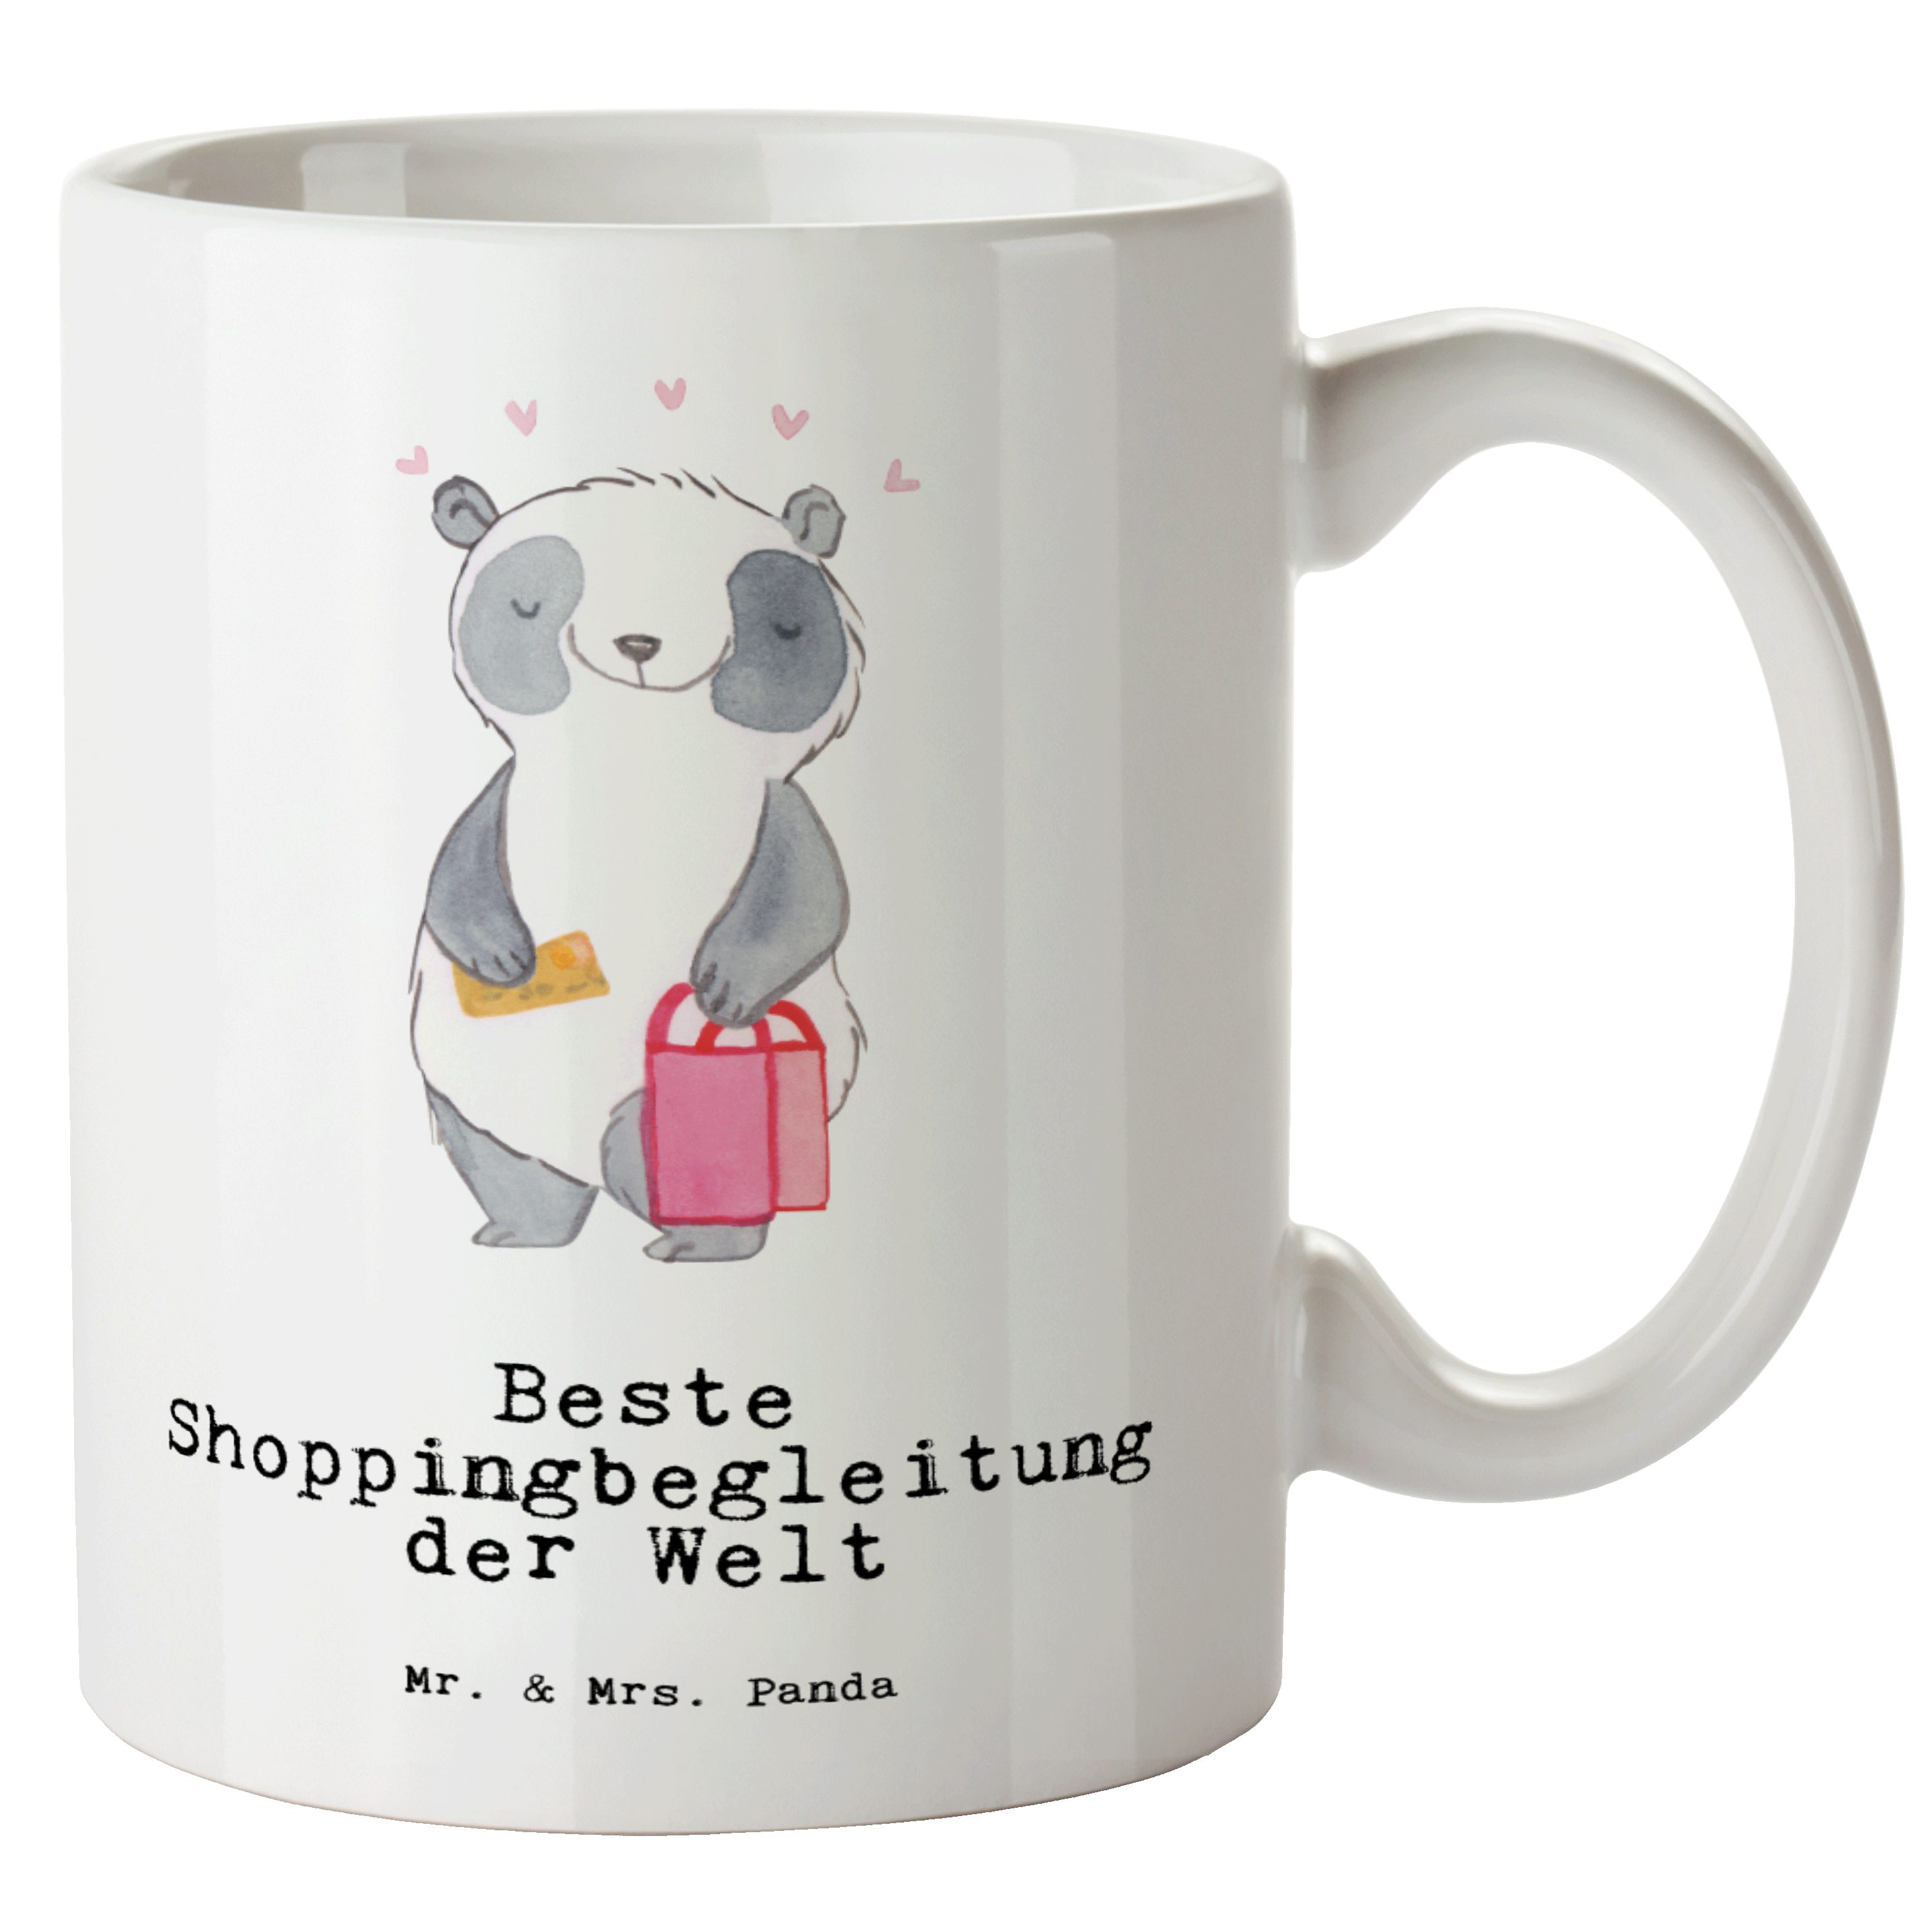 Mr. & Mrs. Panda Tasse Panda Beste Shoppingbegleitung der Welt - Weiß - Geschenk, spülmaschi, XL Tasse Keramik